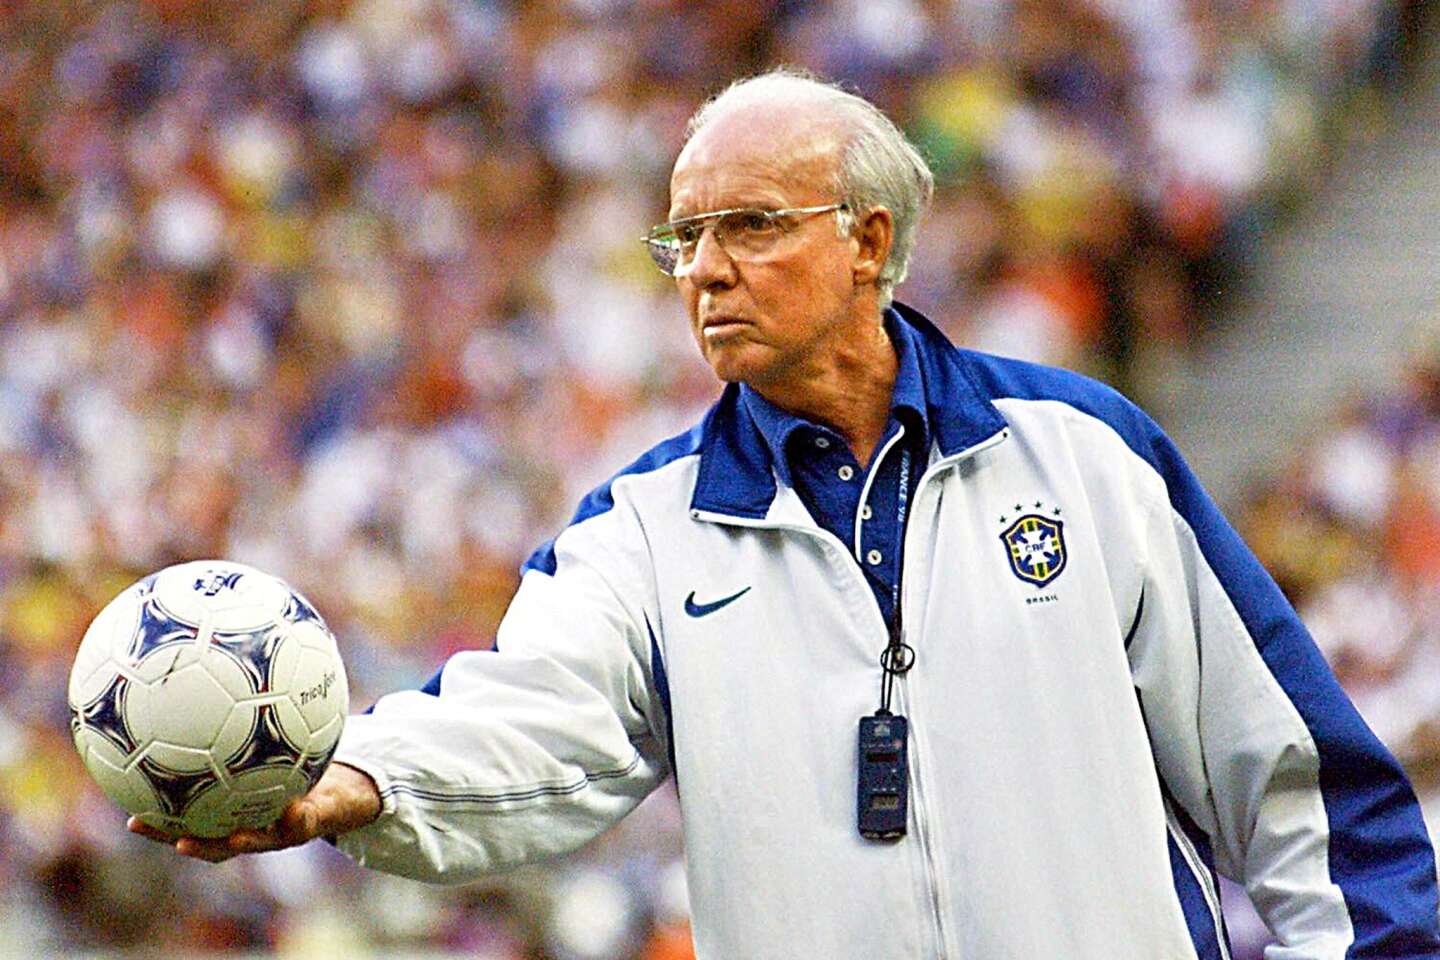 Zmarł Mario Zagallo, legenda brazylijskiej piłki nożnej, pierwszy mistrz świata jako zawodnik i trener